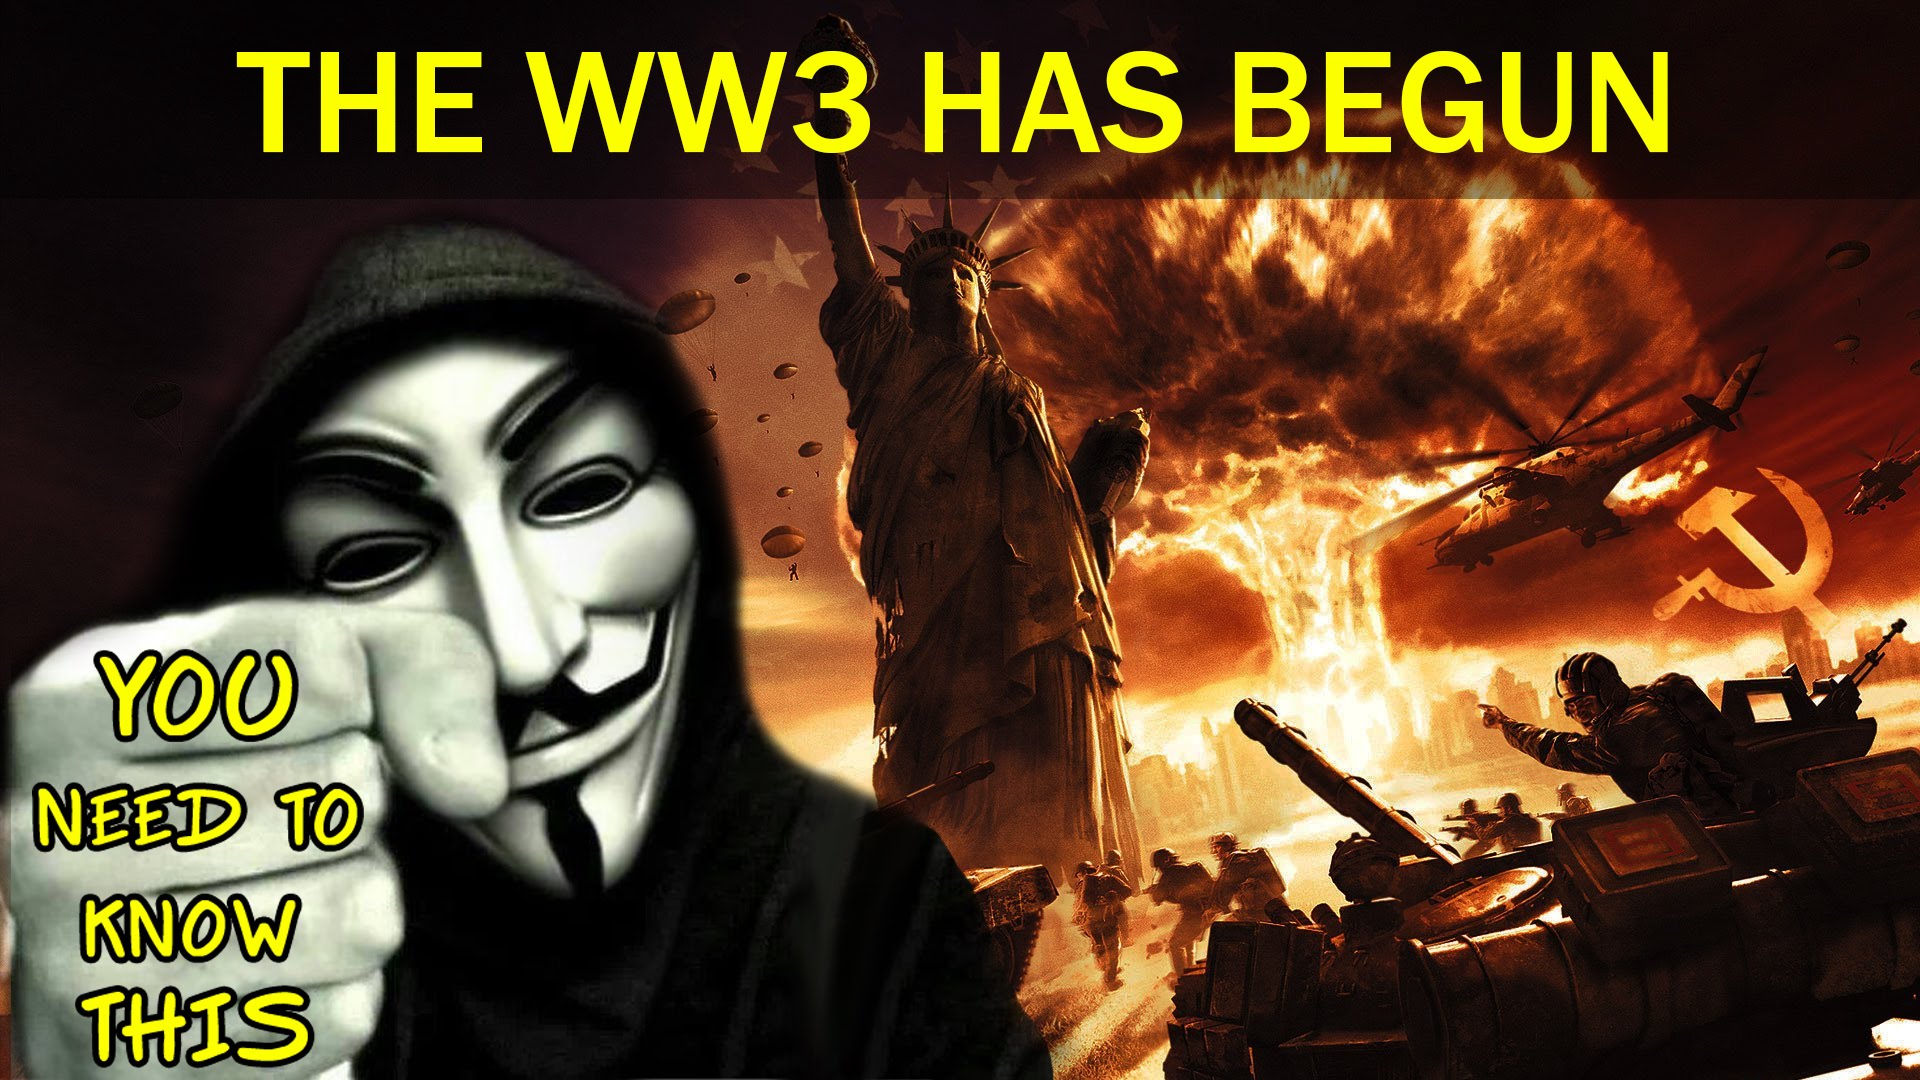 Anonymous: The World War 3 Has Begun!